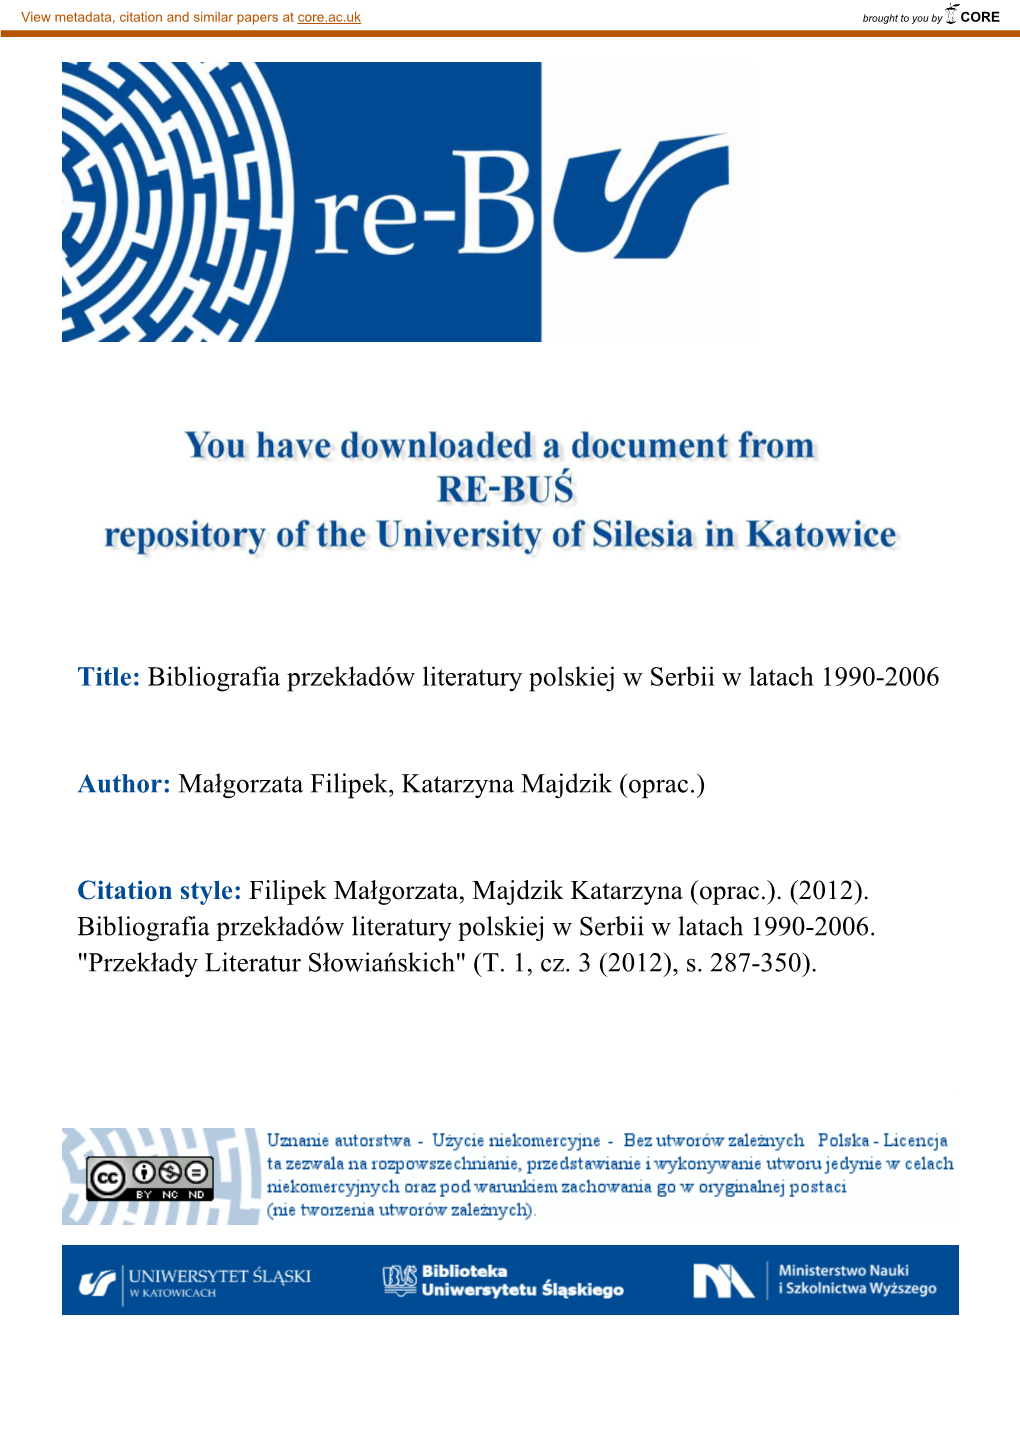 Title: Bibliografia Przekładów Literatury Polskiej W Serbii W Latach 1990-2006